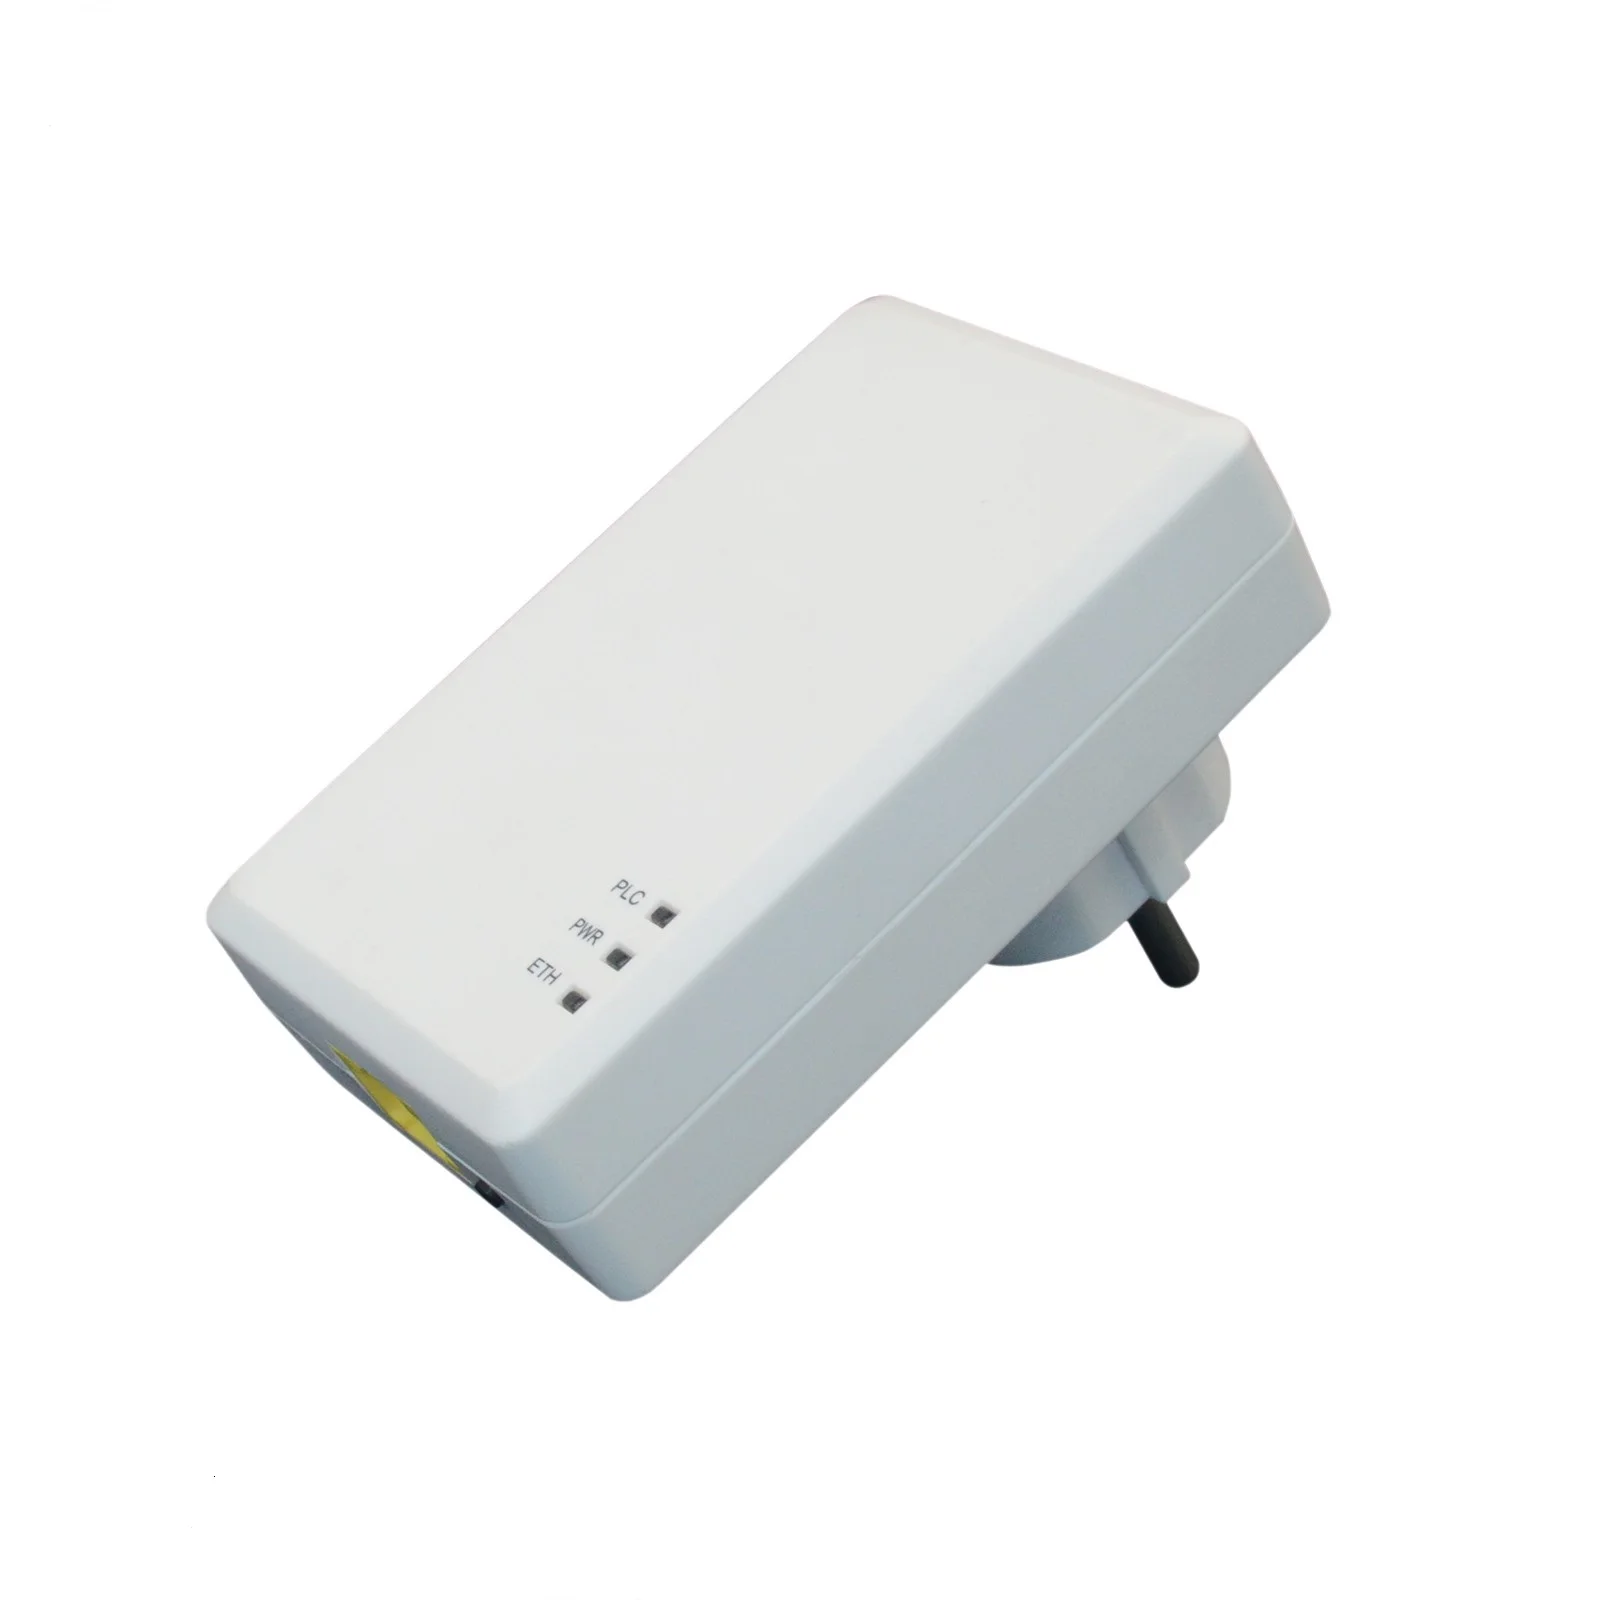 1200mbit Homeplug Av Powerline Mini Adapter,Support Tr-069 ...